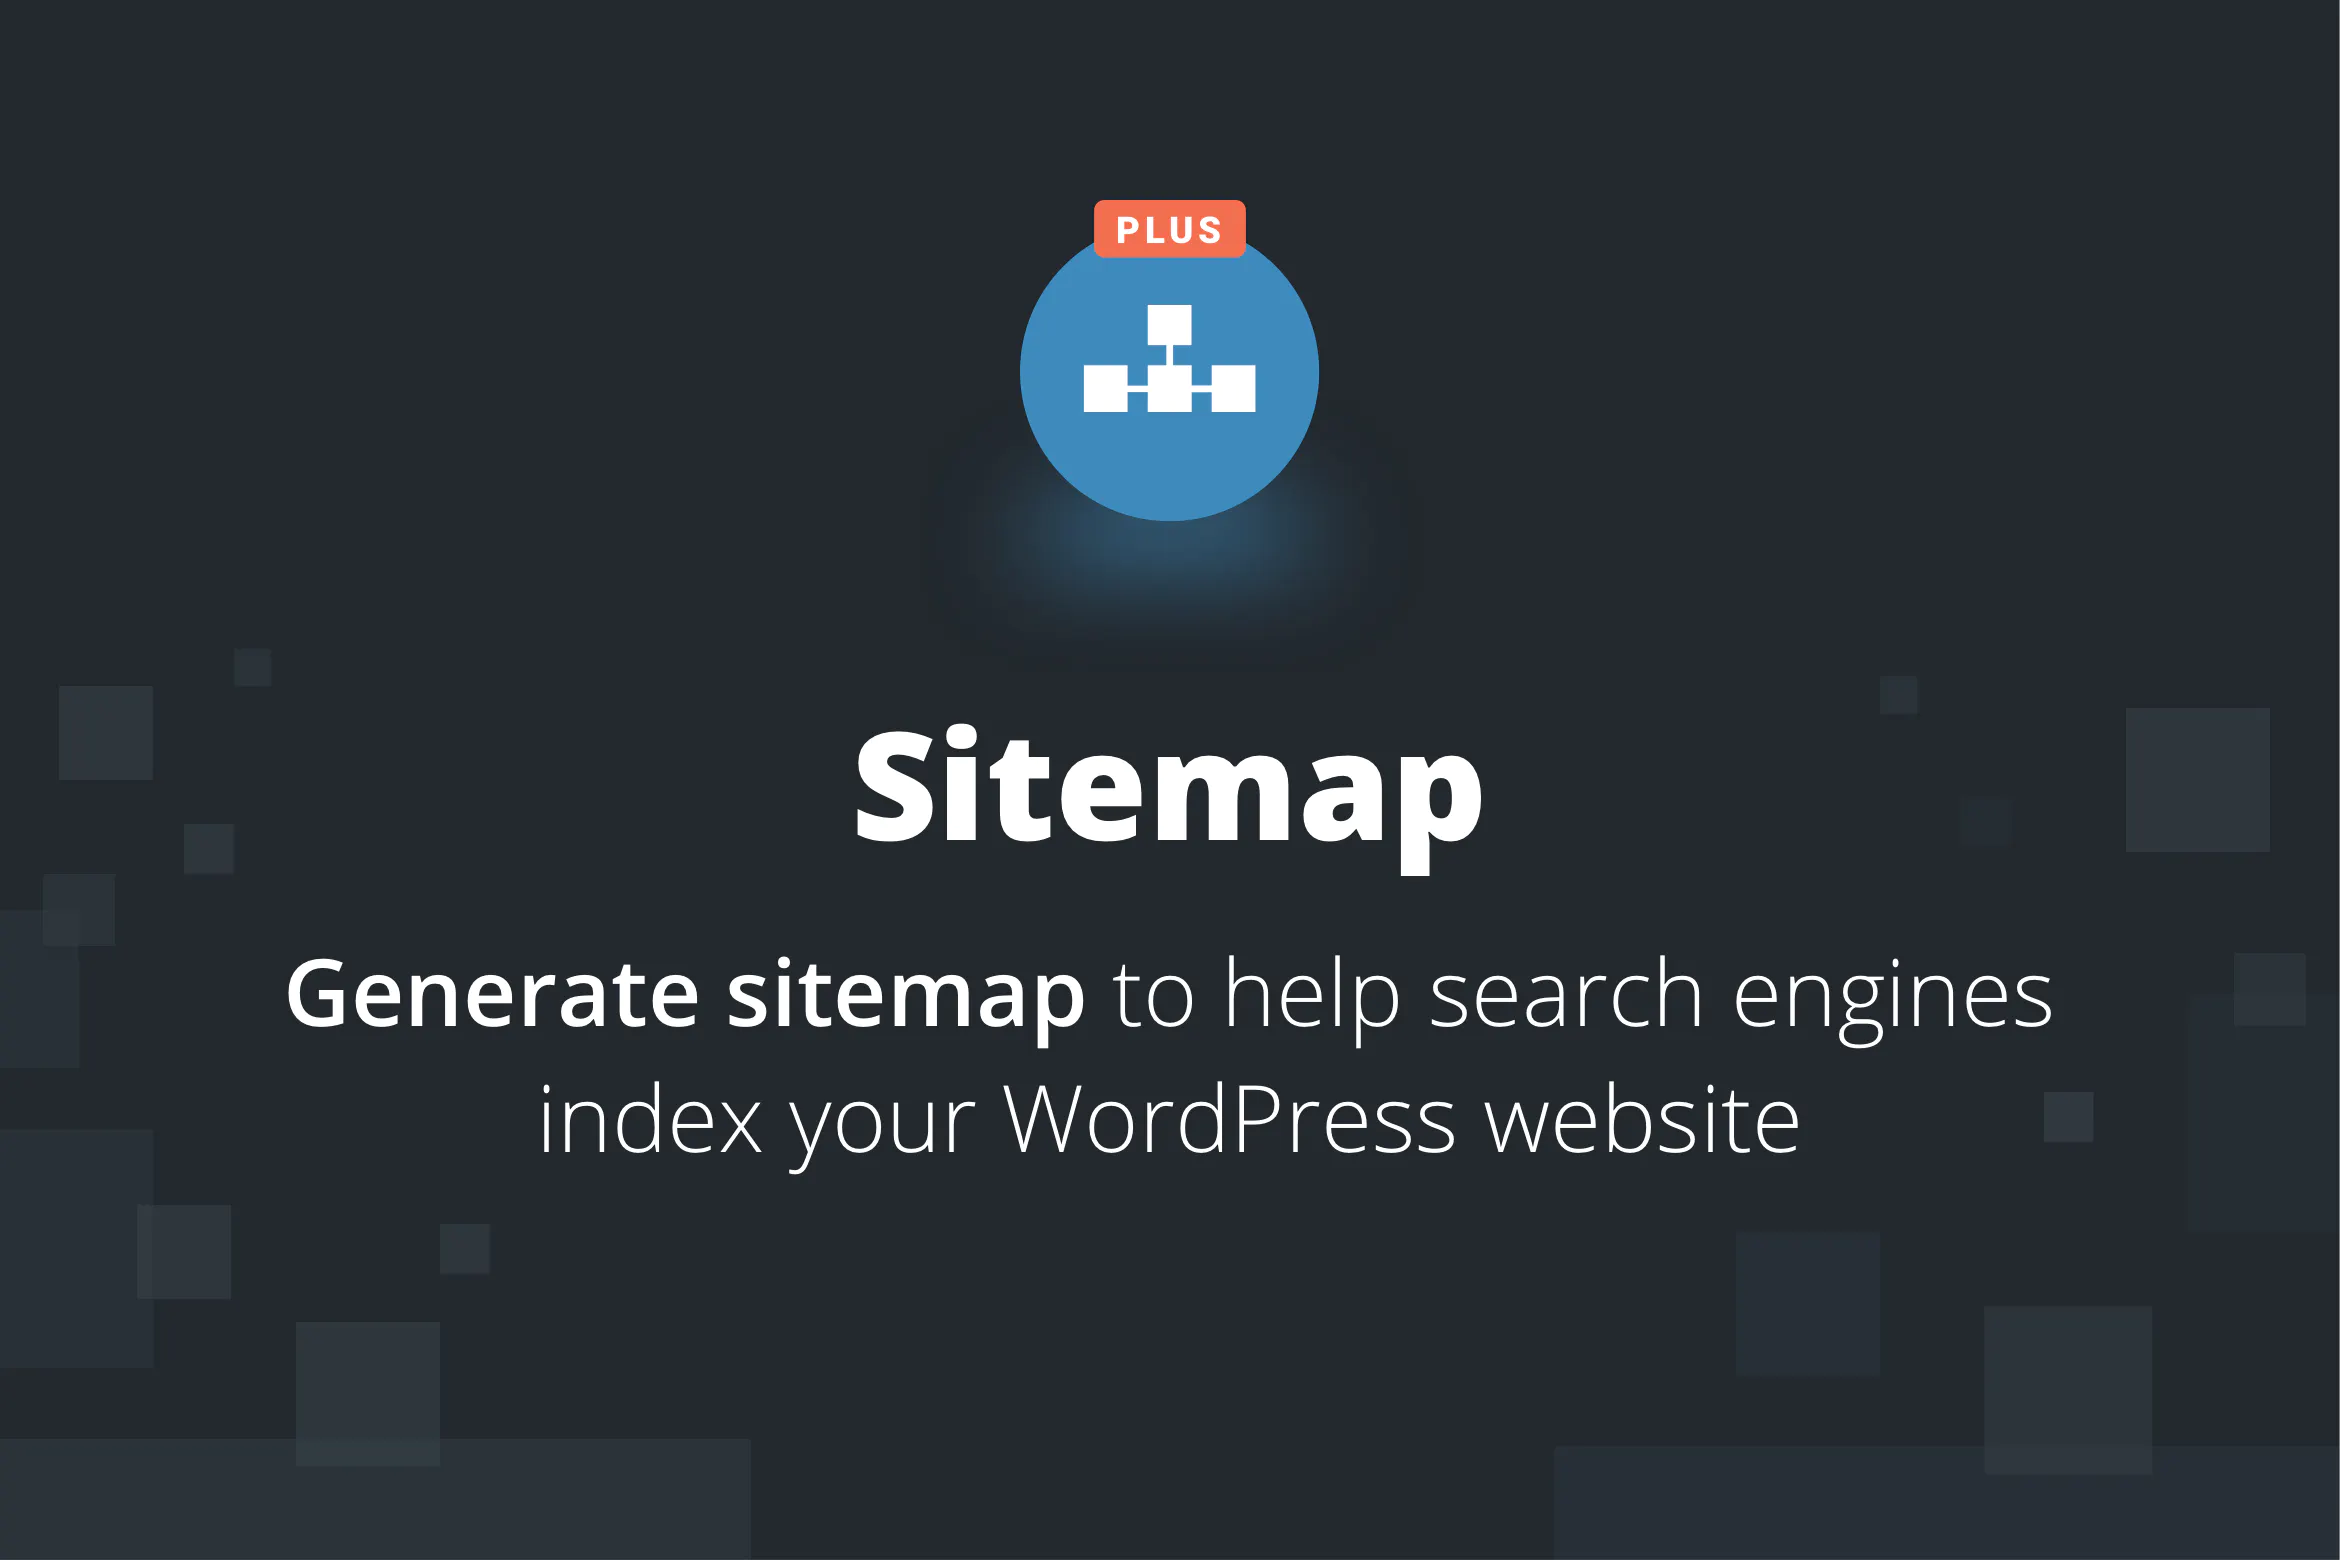 دانلود افزونه وردپرس Sitemap Plus - افزونه سایت مپ و نقشه سایت پیشرفته